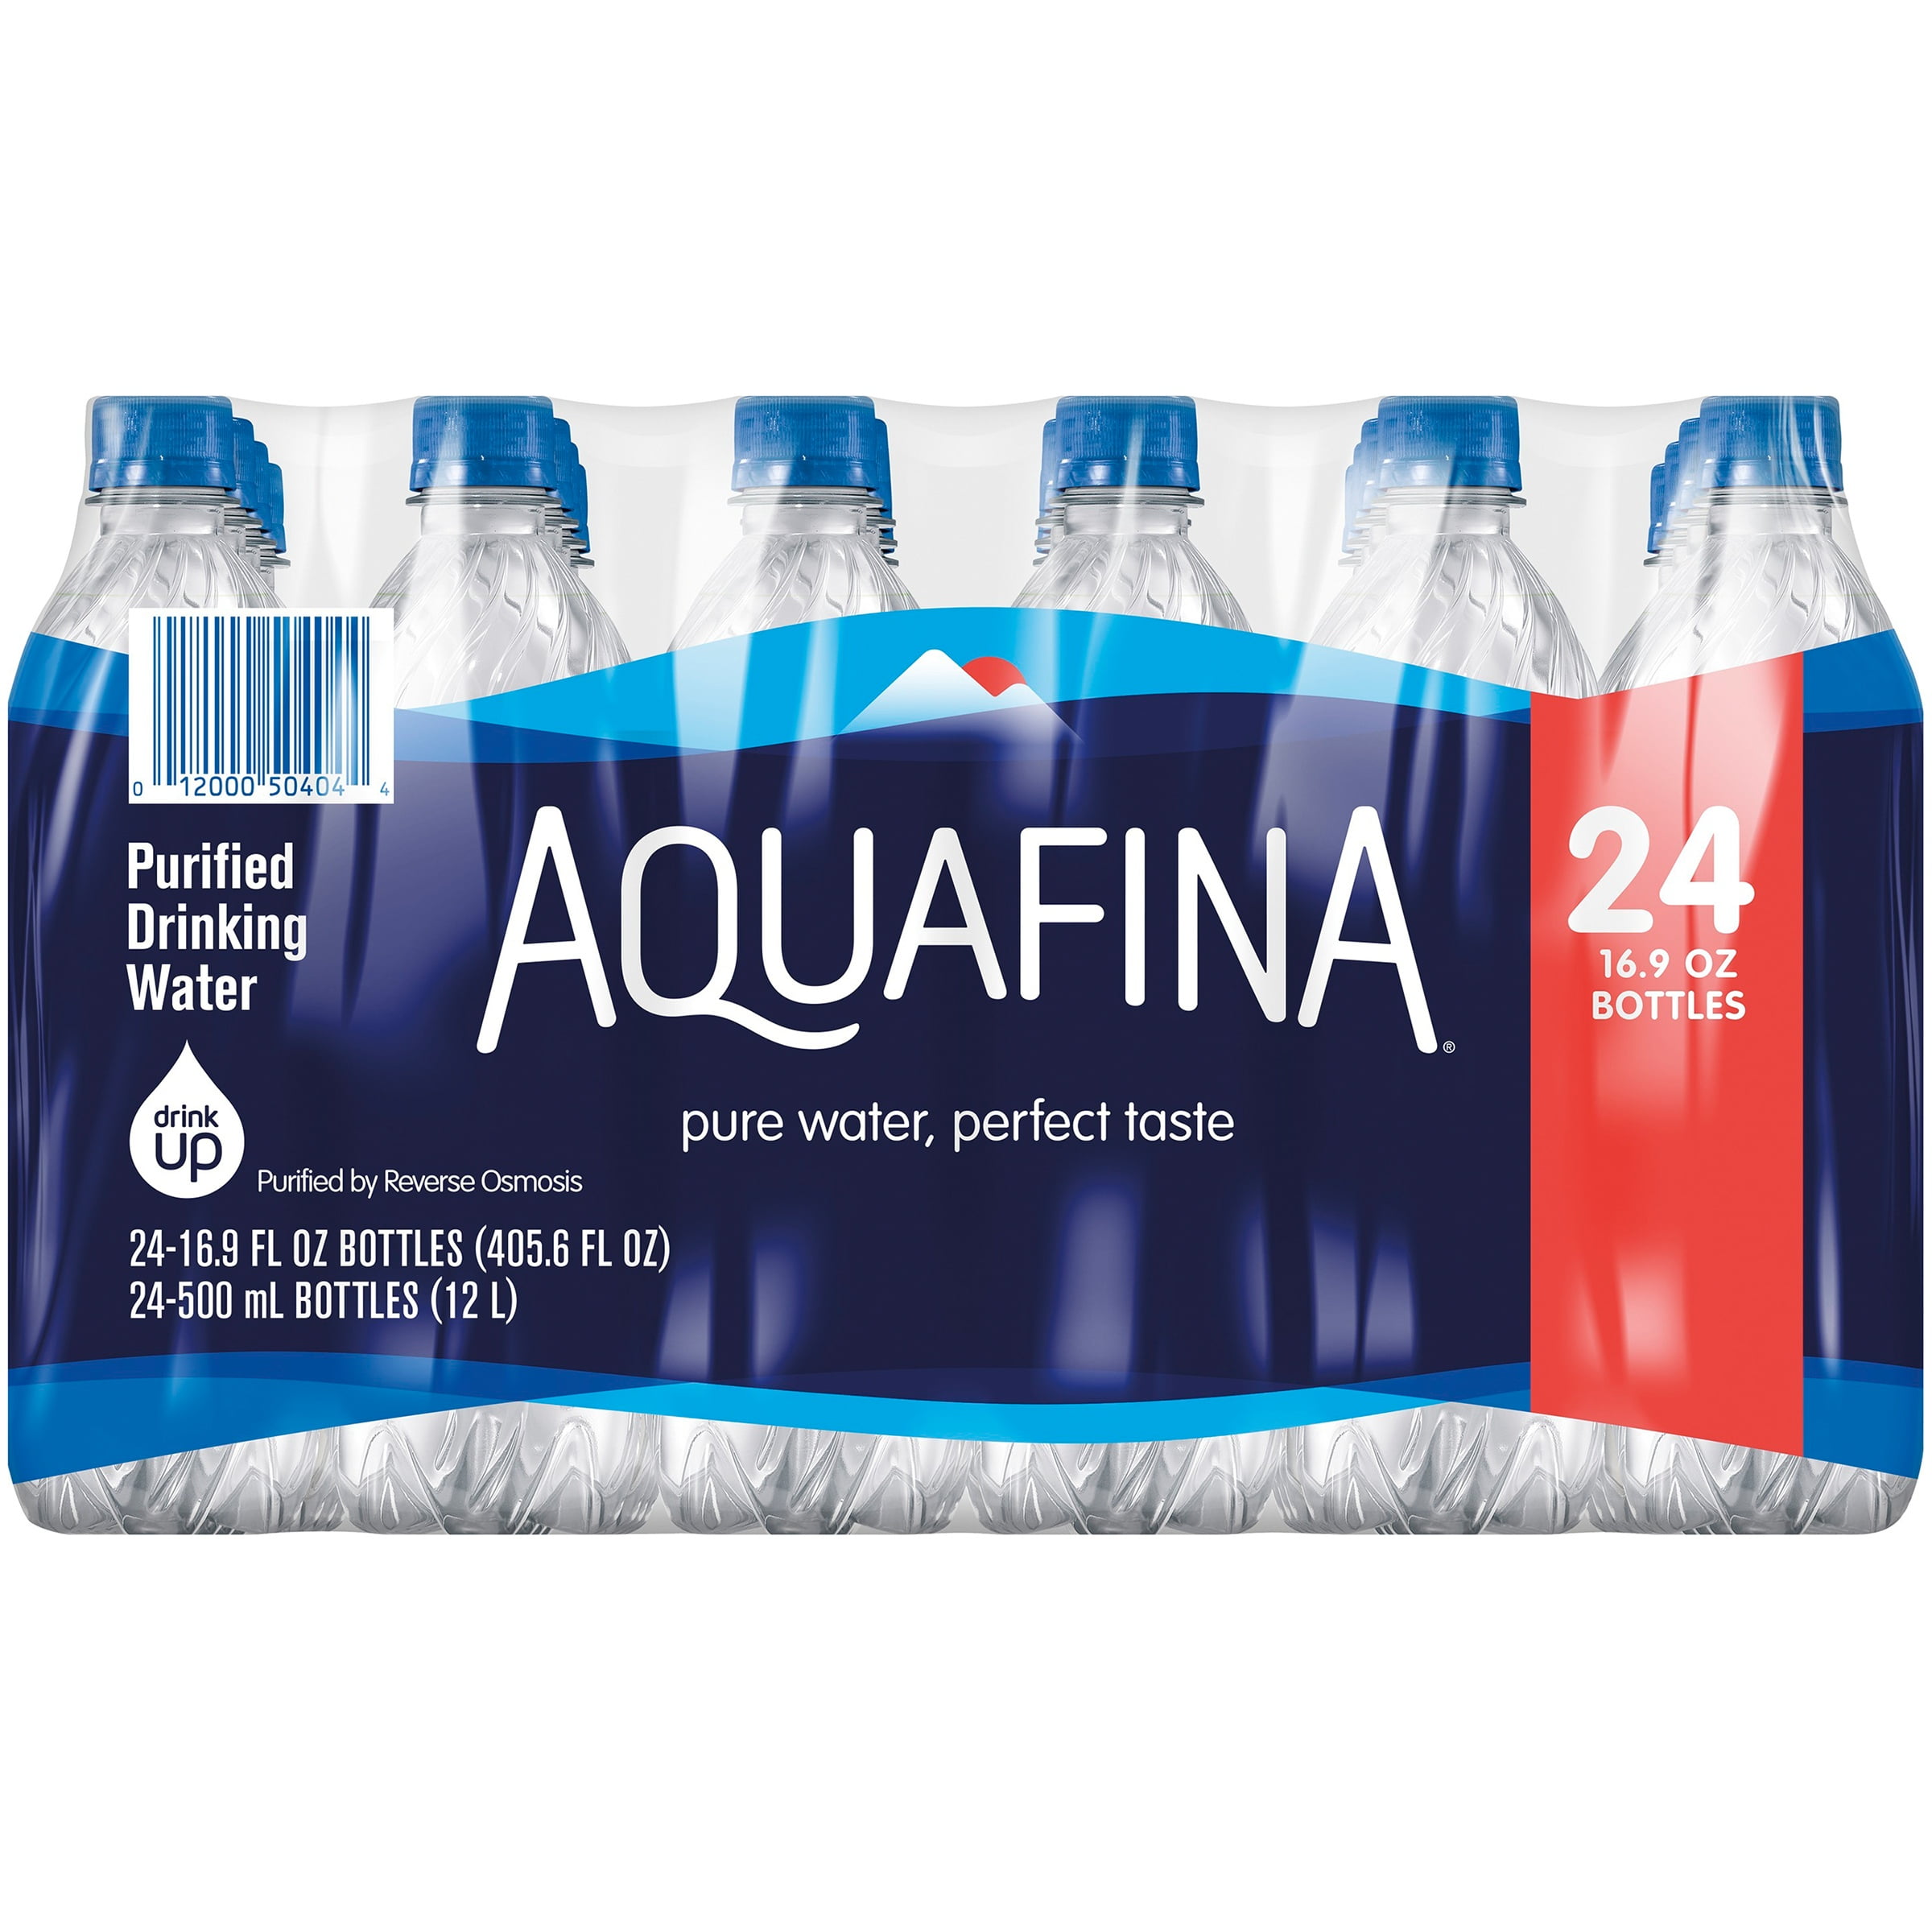 Питьевая вода федерация. Aquafina. Aquafina вода. Аквафина напиток. Purified Bottled Water.